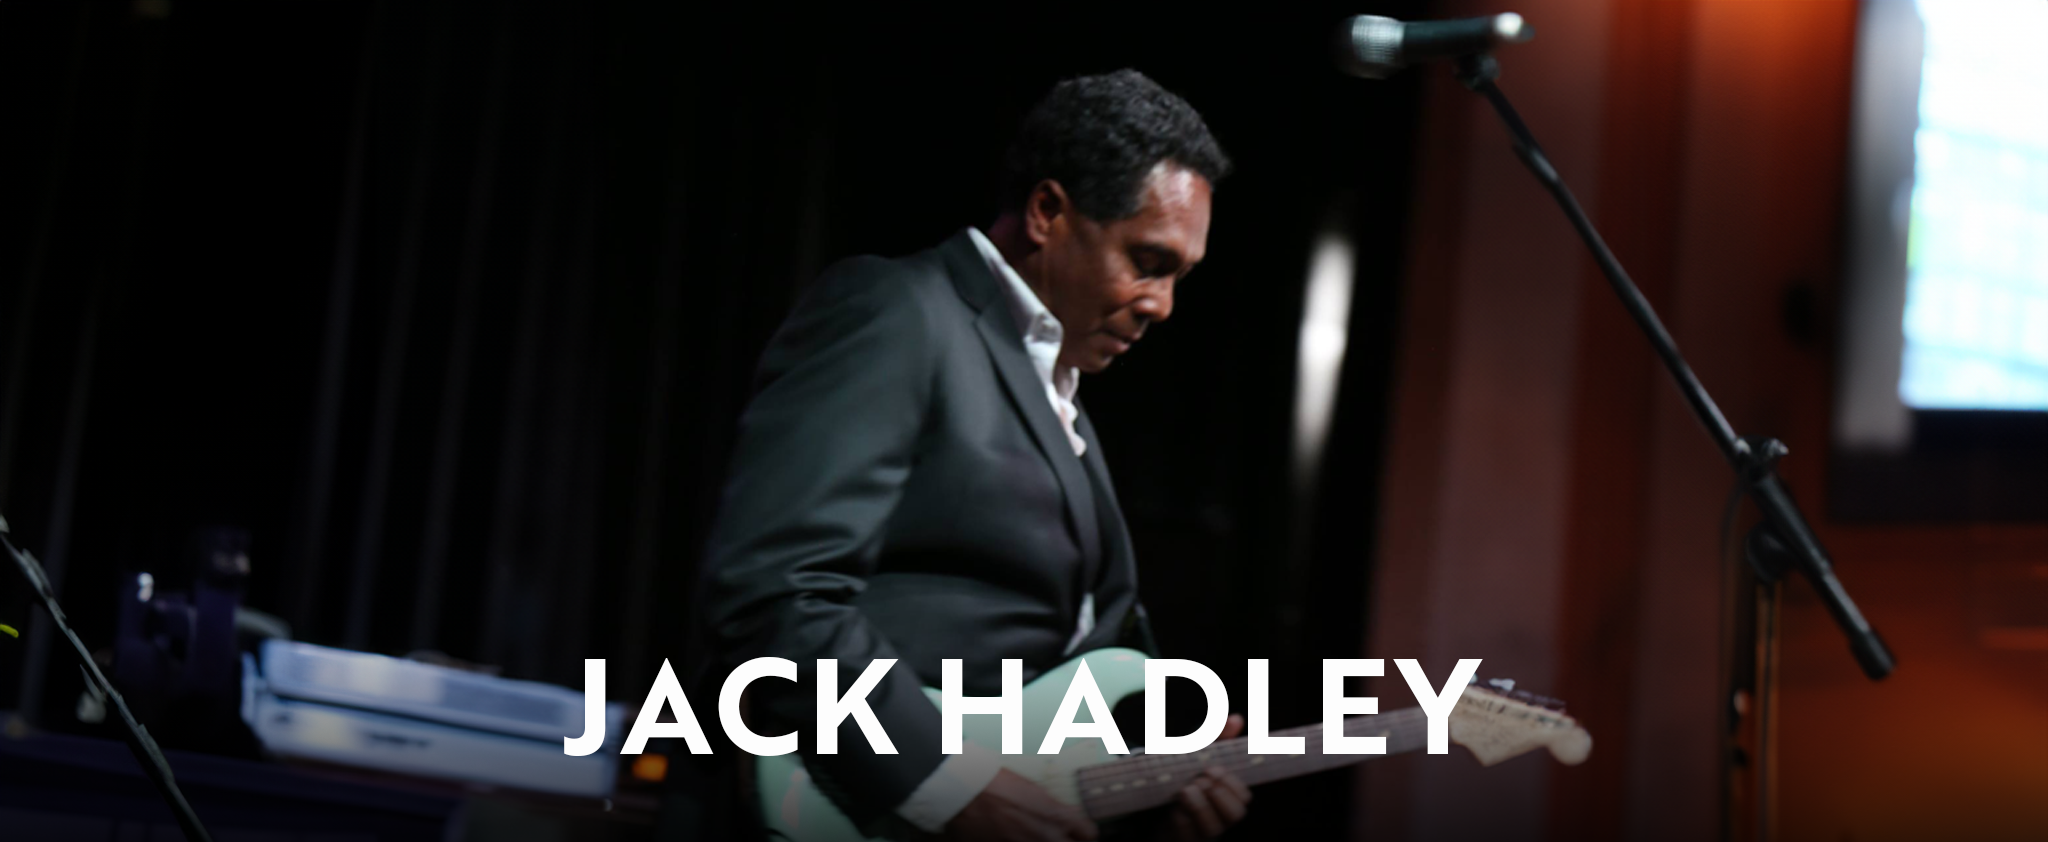 JACK HADLEY HEADER